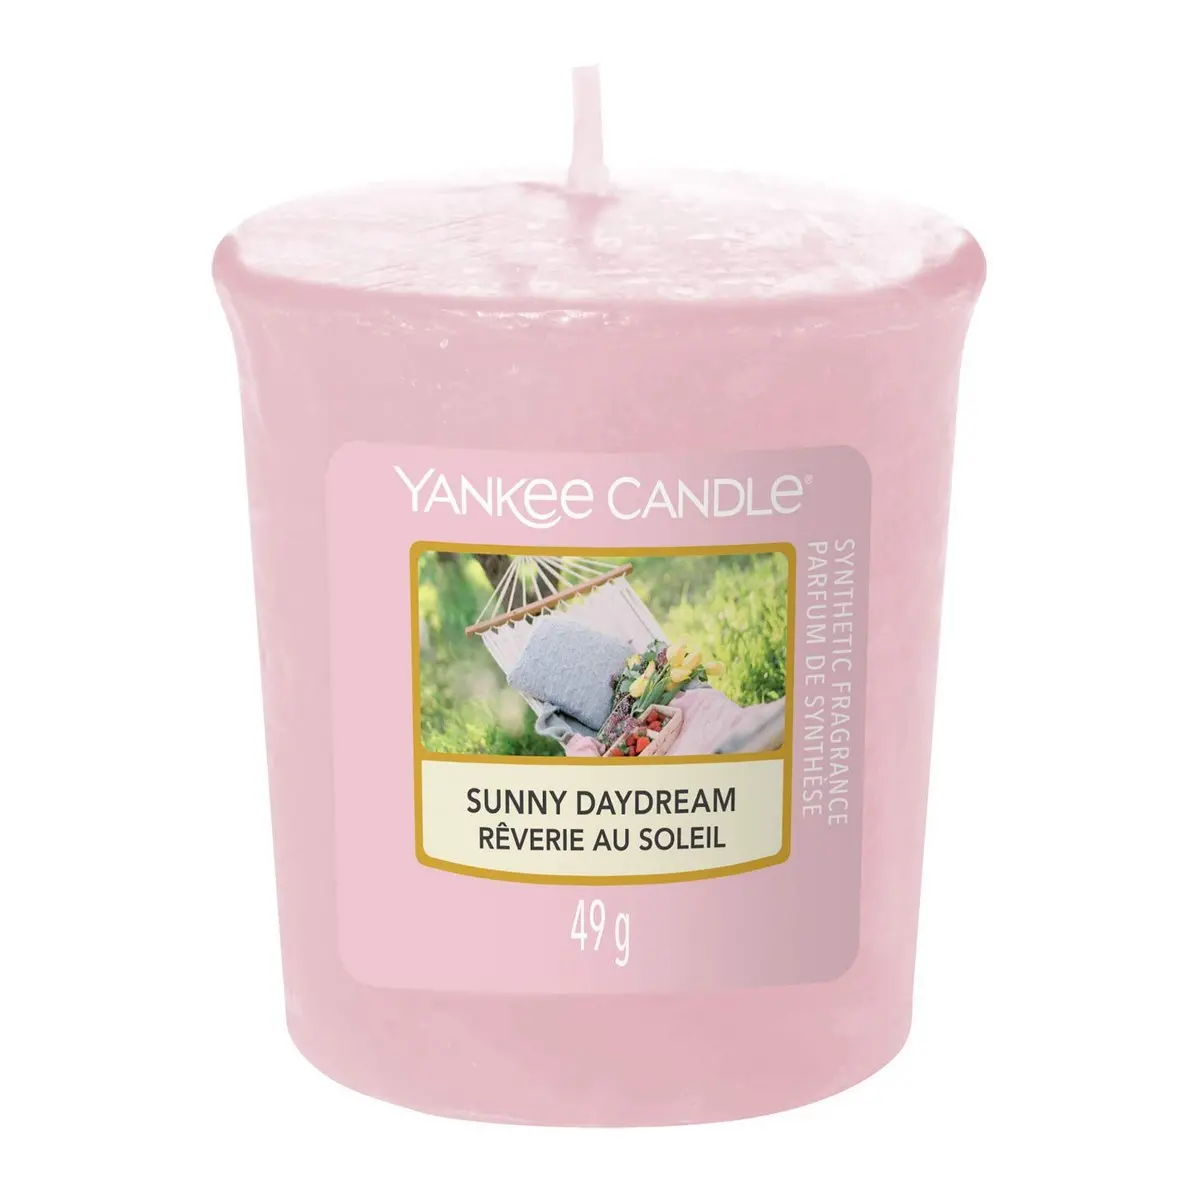 Yankee Candle svijeća votive Sunny Daydream image